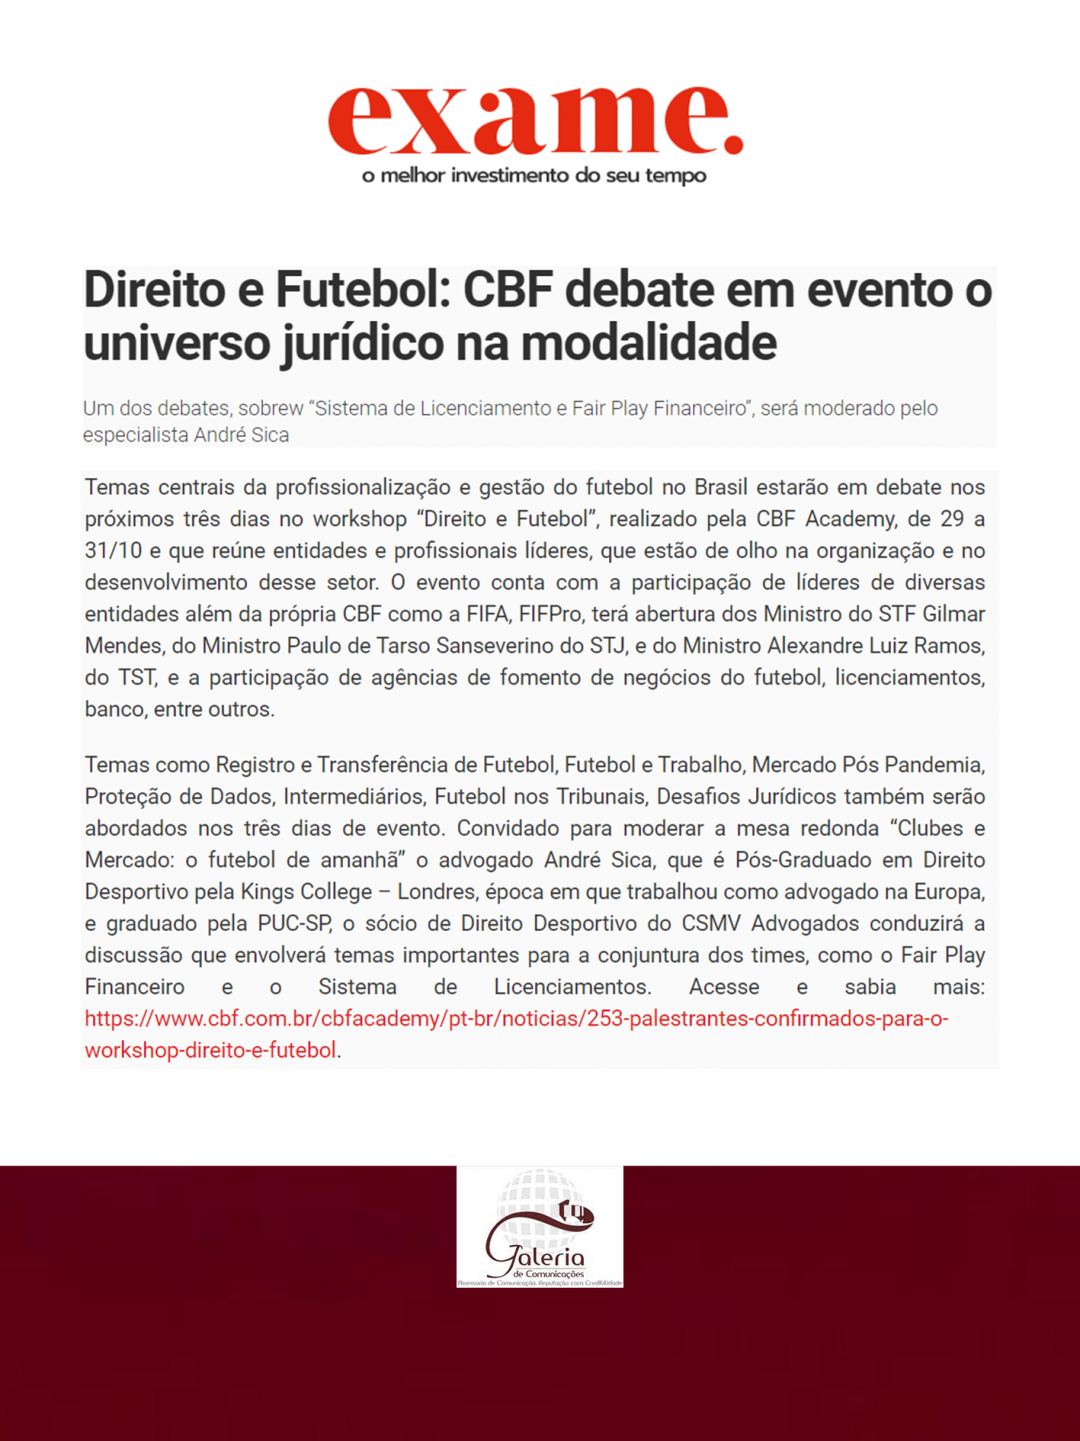 EXAME – Direito e Futebol: CBF debate em evento o universo jurídico na modalidade